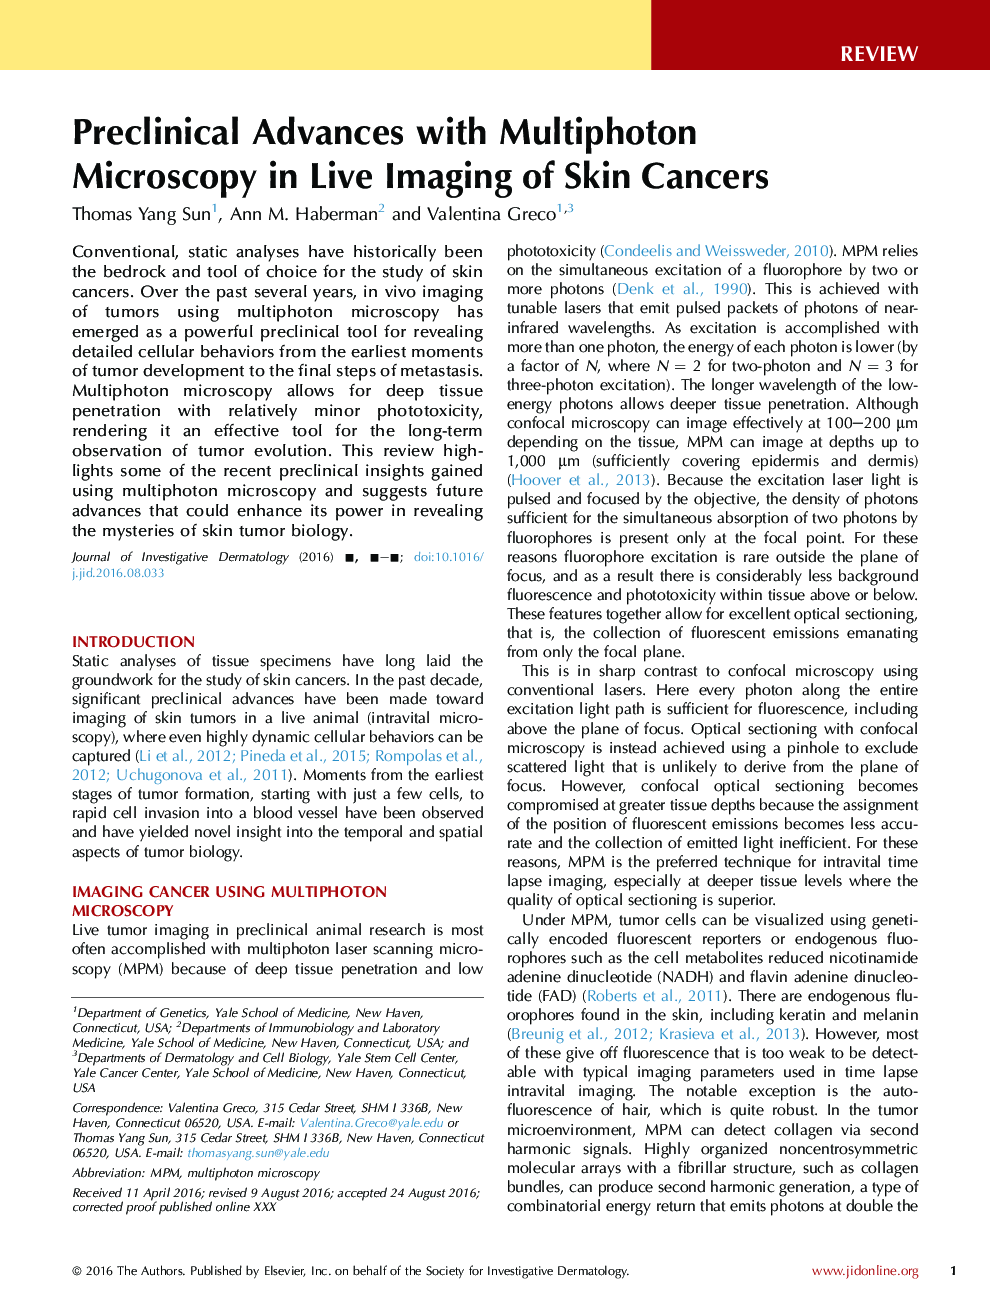 پیشرفتهای پیشرونده با میکروسکوپ چند فتونی در تصویربرداری زنده سرطان پوست 